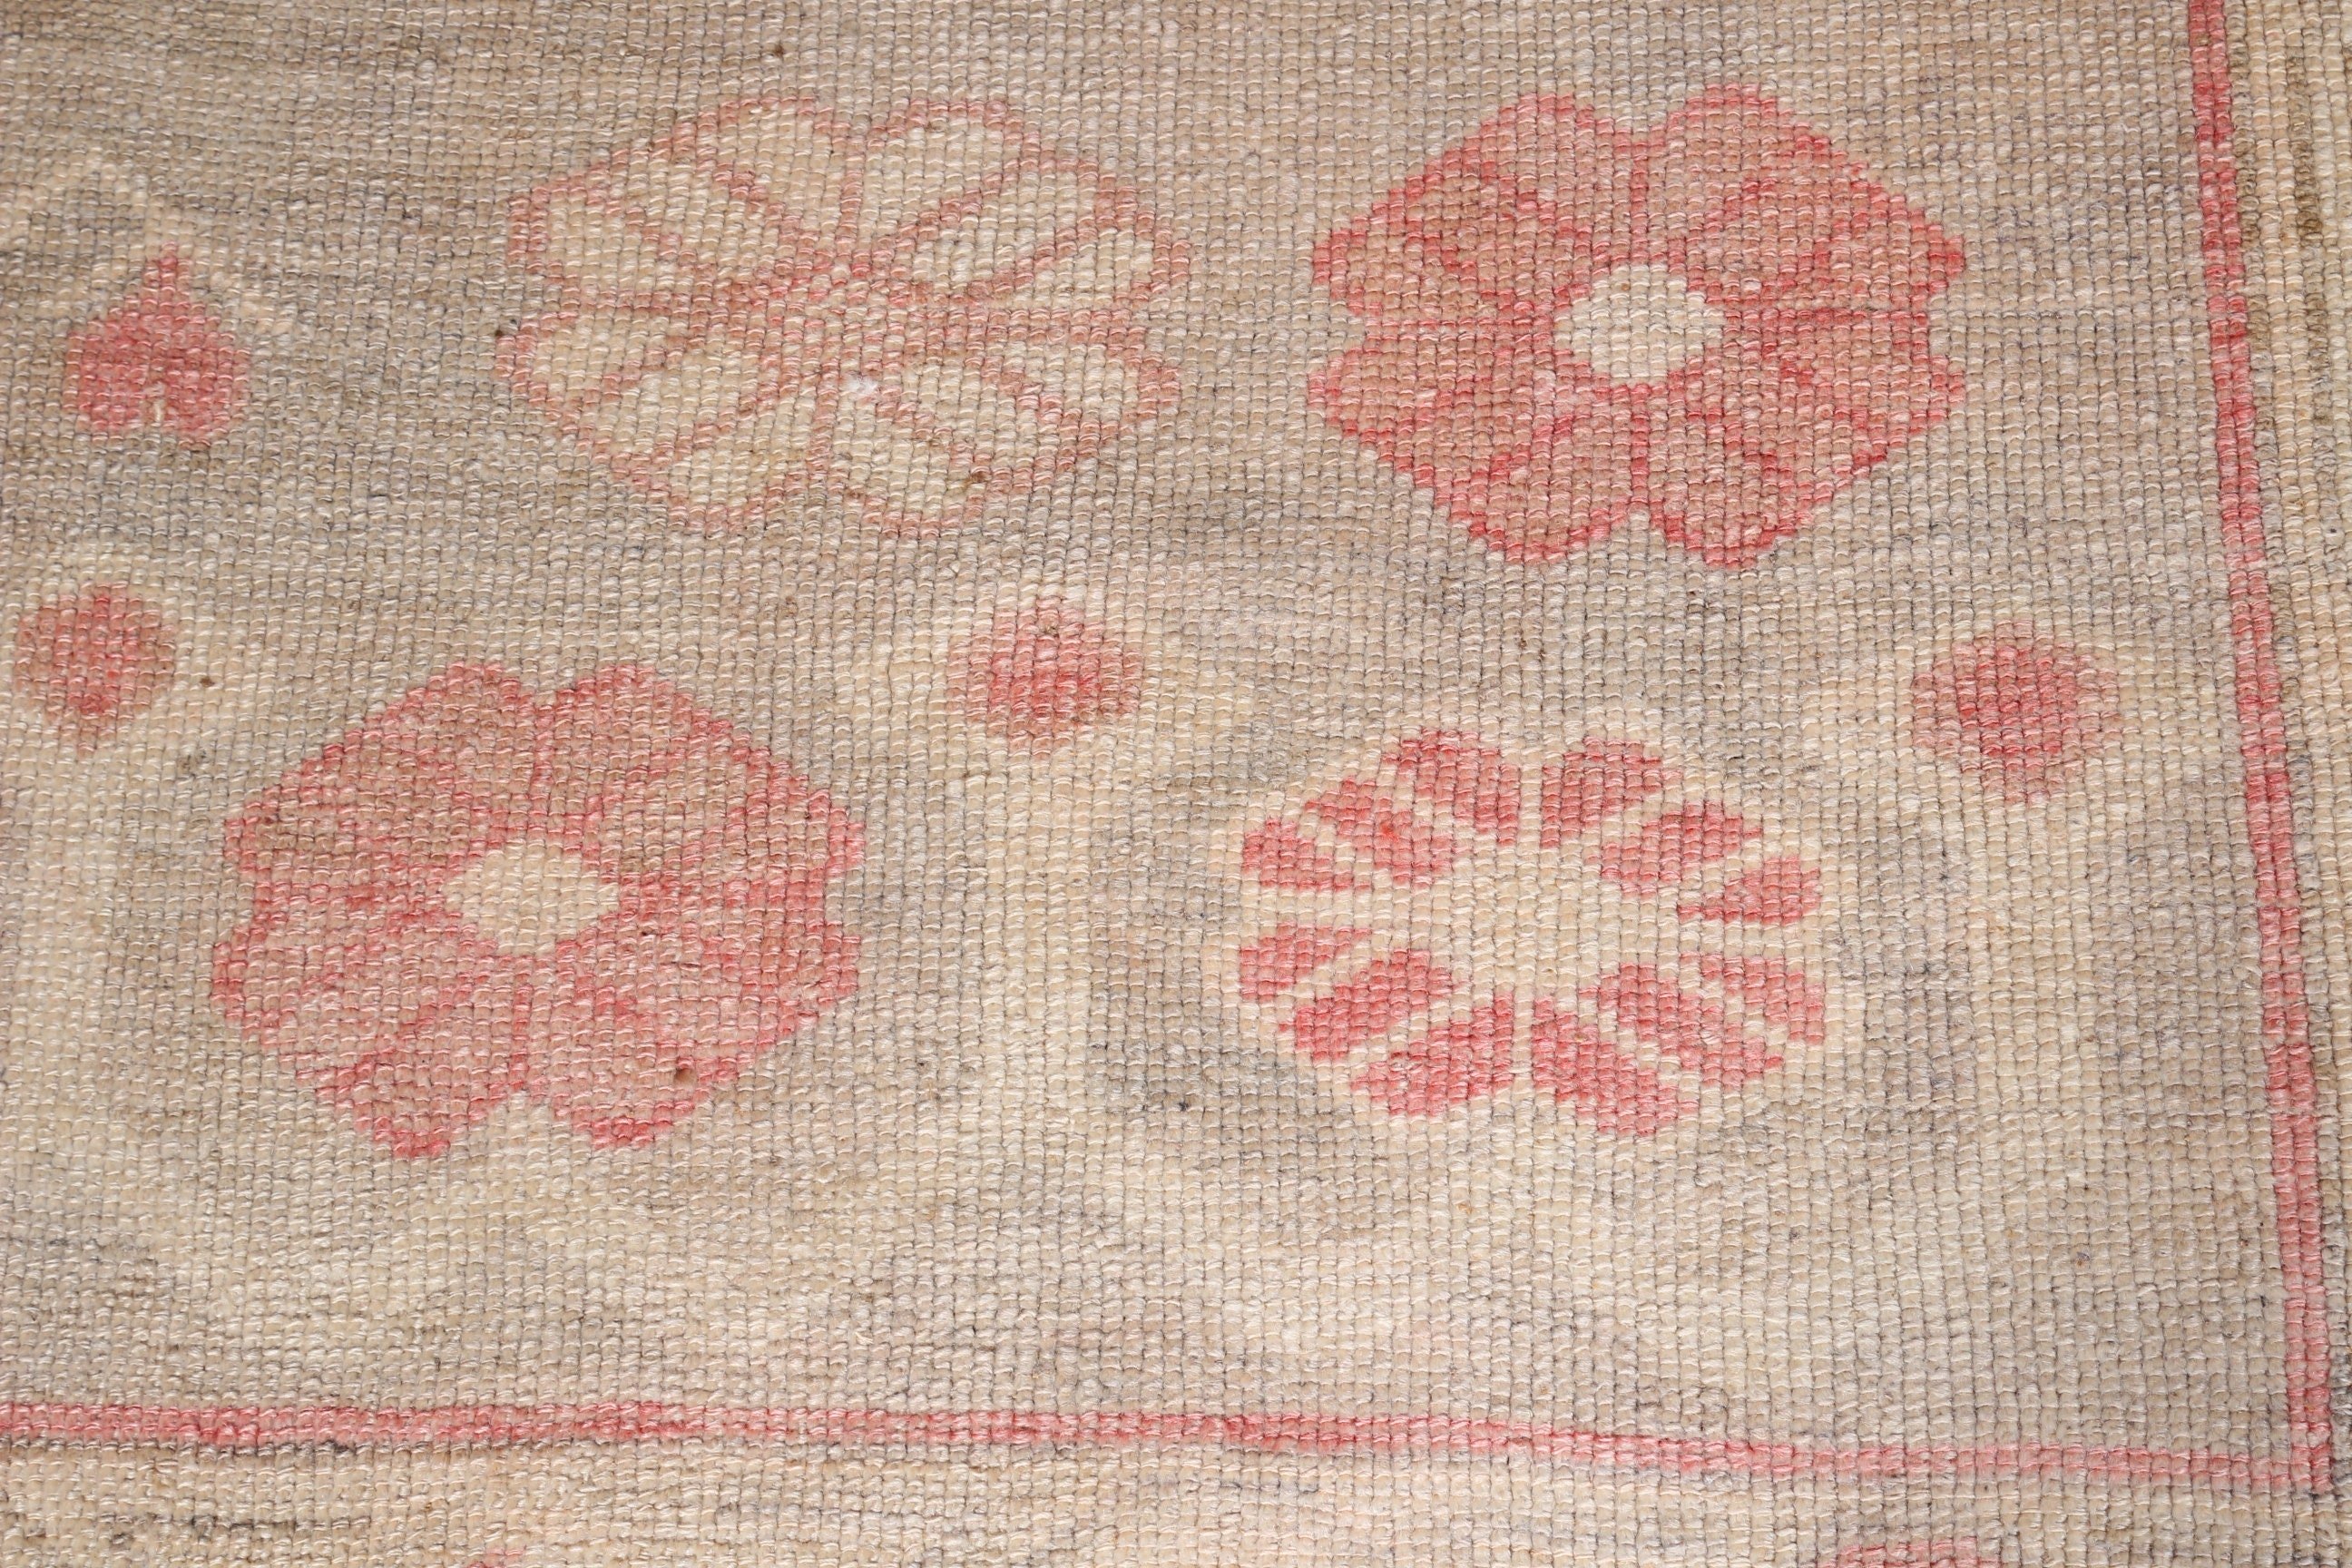 Moroccan Rug, Pink Wool Rug, 2.5x1.8 ft Small Rug, Rugs for Door Mat, Vintage Rugs, Nursery Rug, Oushak Rug, Kitchen Rugs, Turkish Rugs